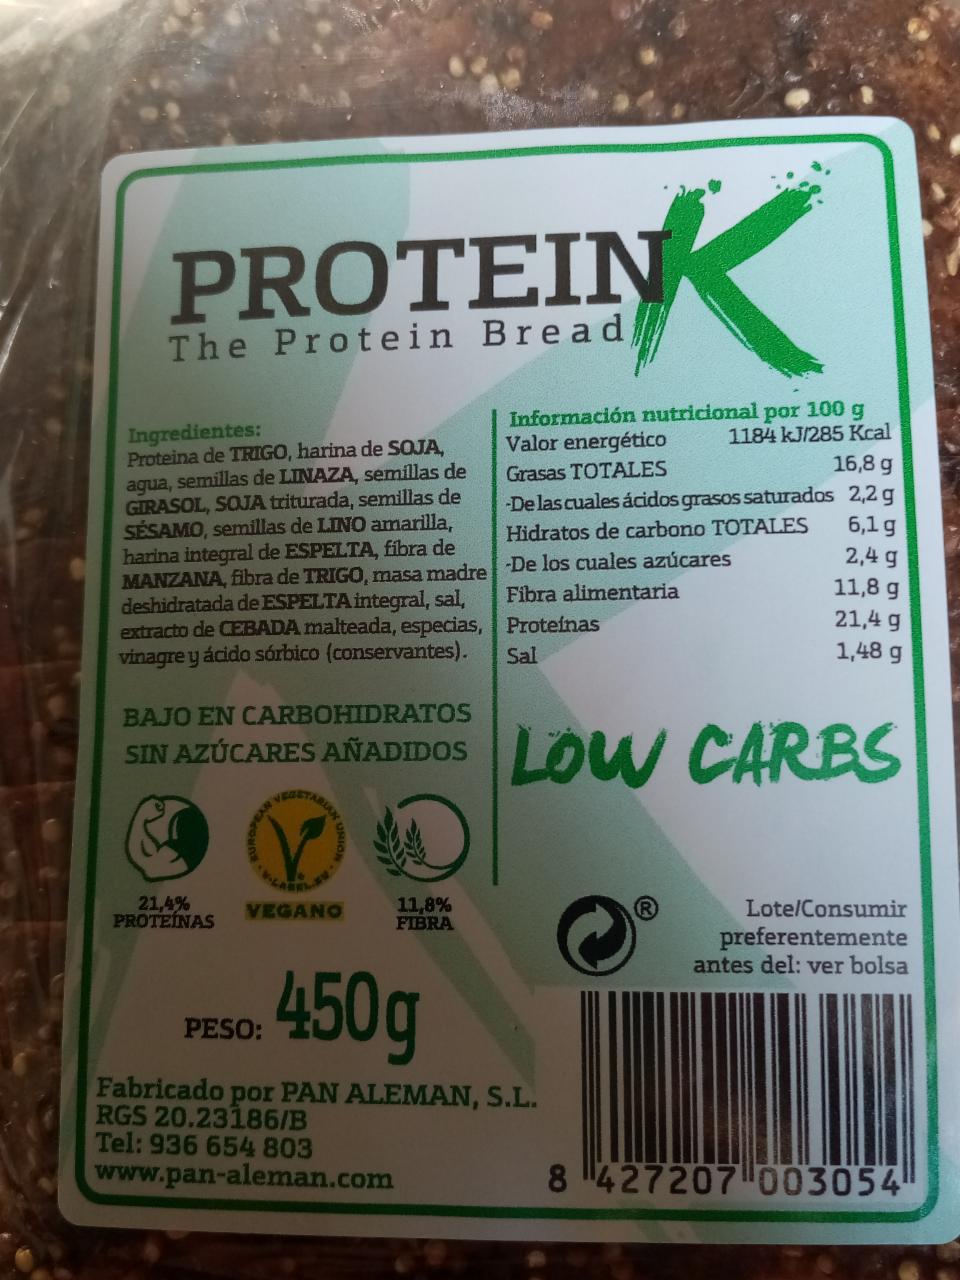 Fotografie - The protein bread